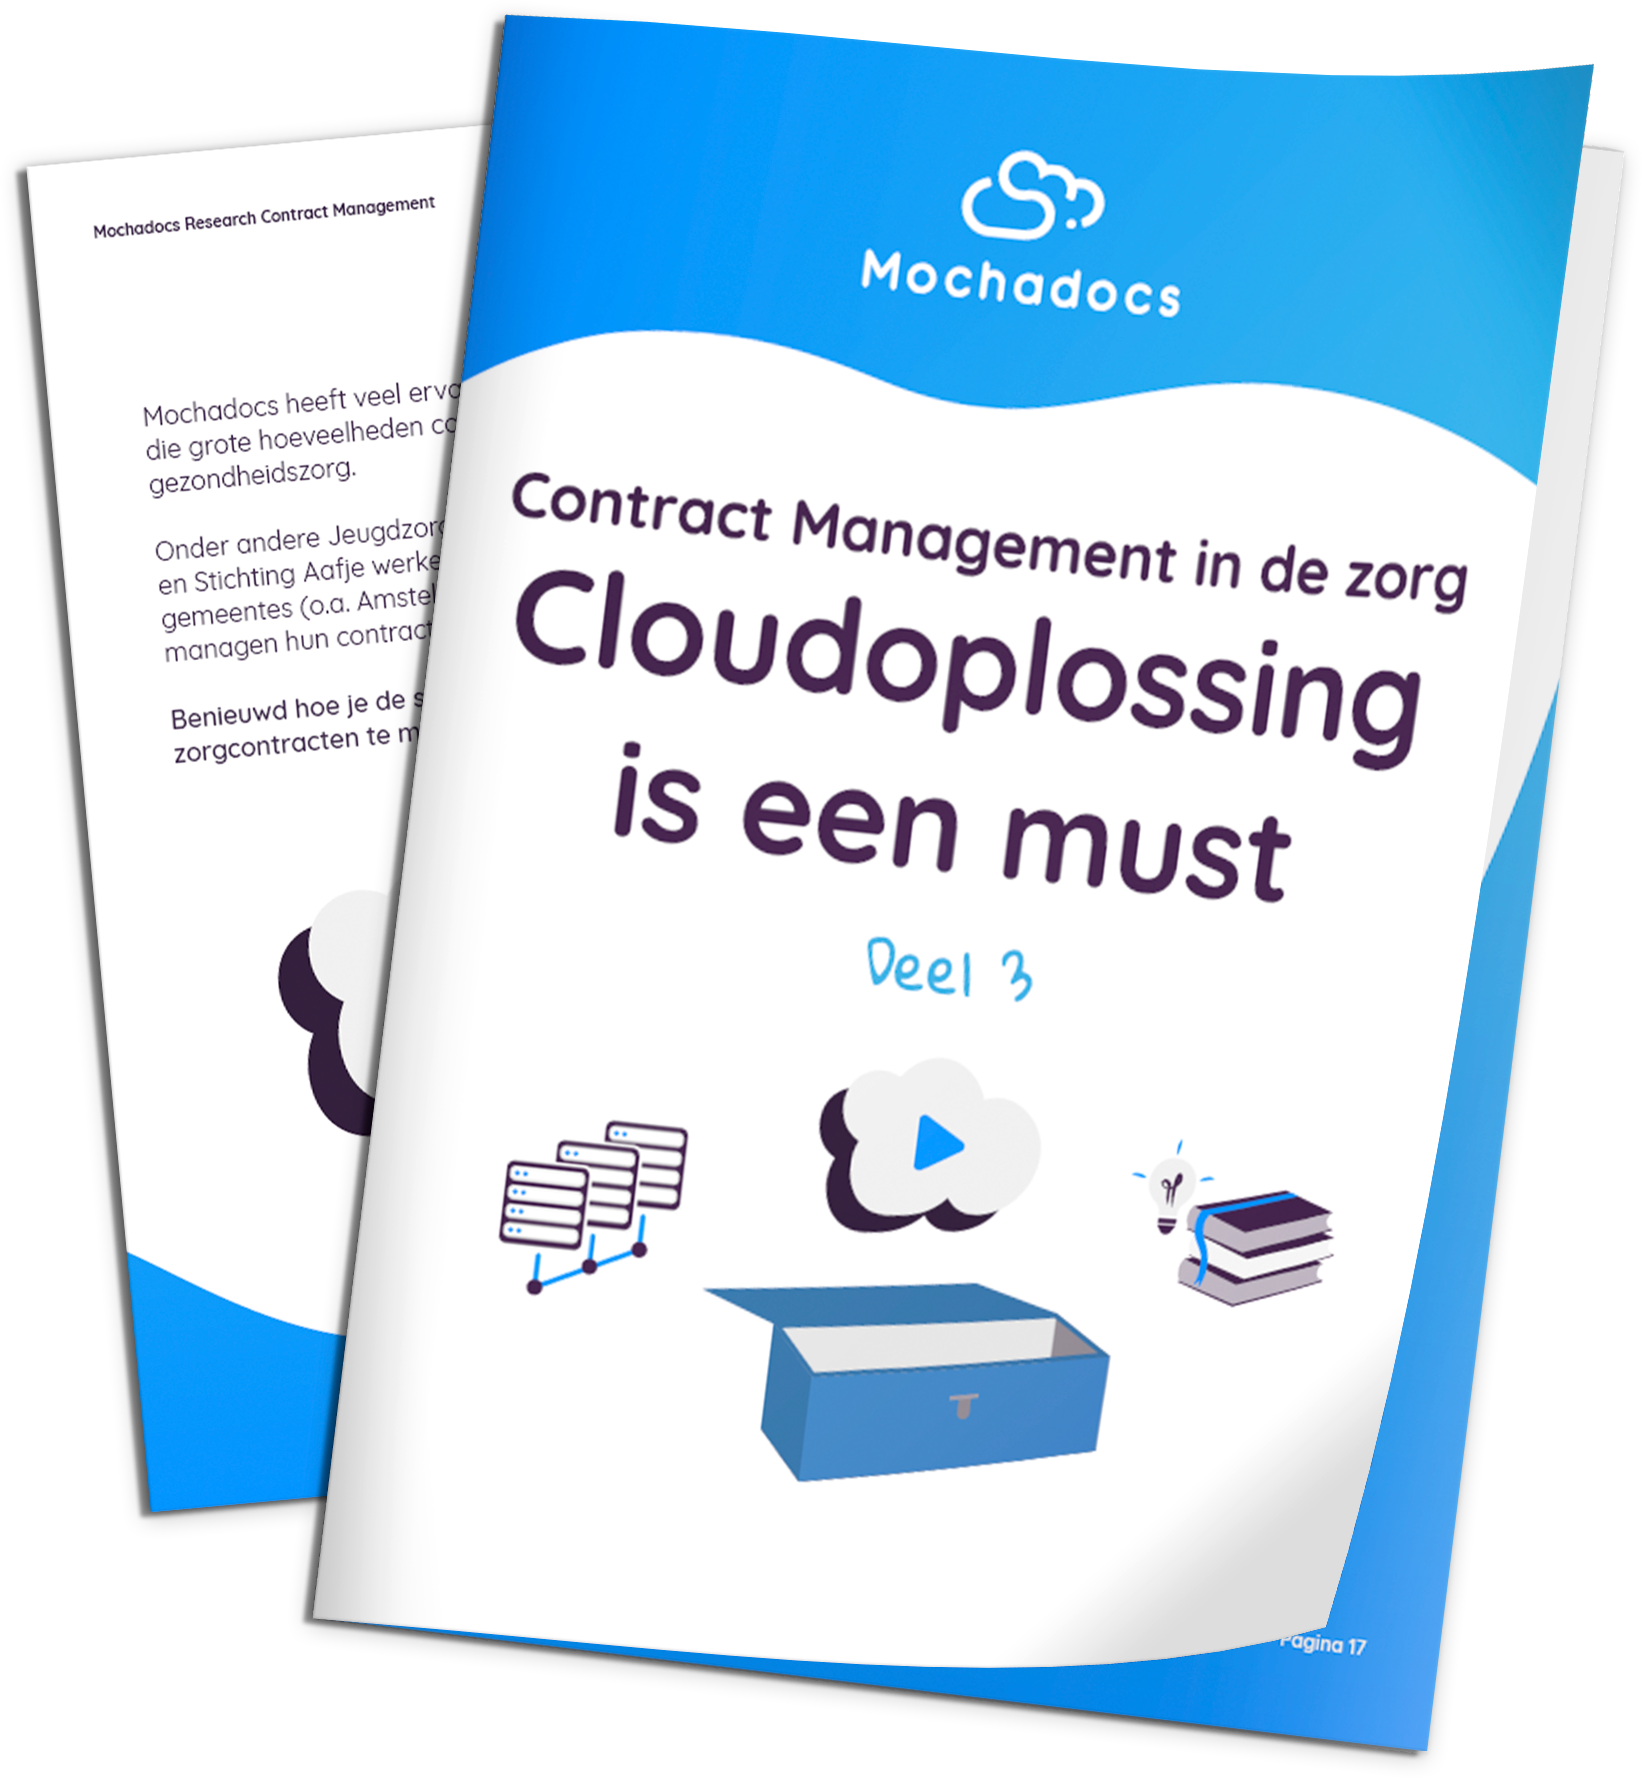 Mochadocs - Contract Management - eBook - Contract Management in de zorg Cloudoplossing is een must